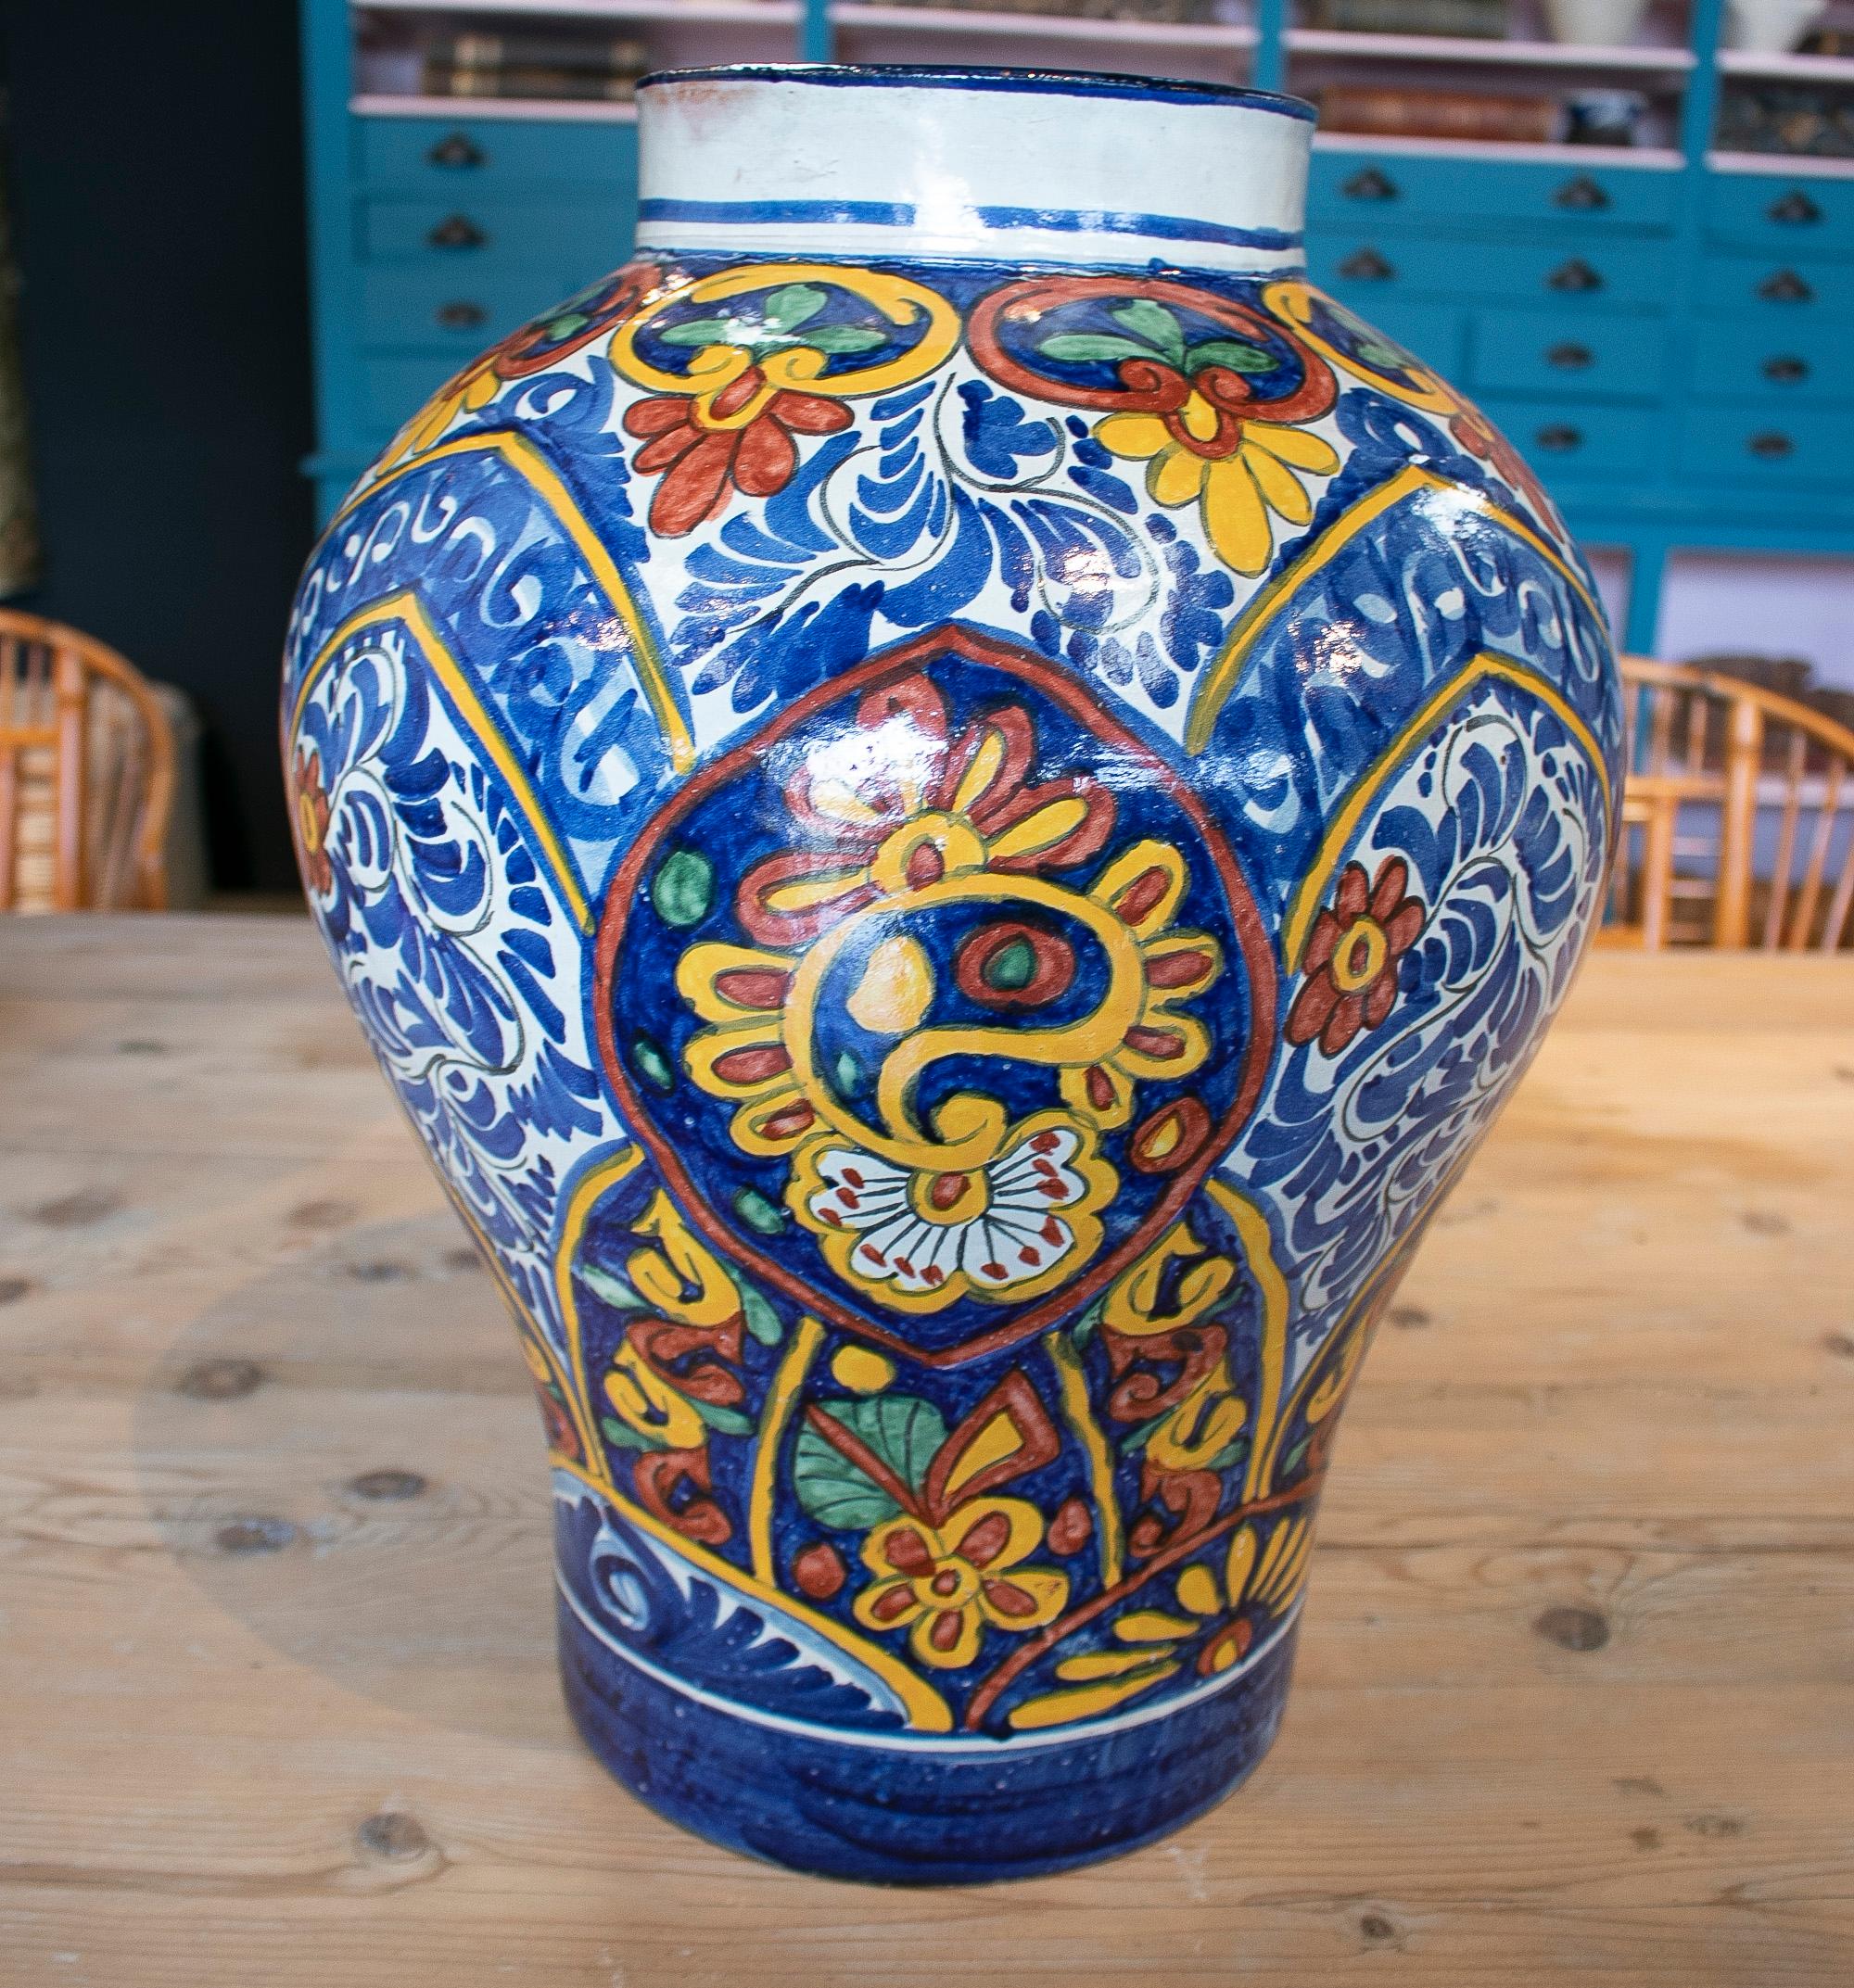 Antiguo jarrón de cerámica tradicional española del siglo XIX, hecho a mano, con motivos ornamentales inspirados en flores blancas, azules y amarillas. Firmado Alba H. Ennex.
  